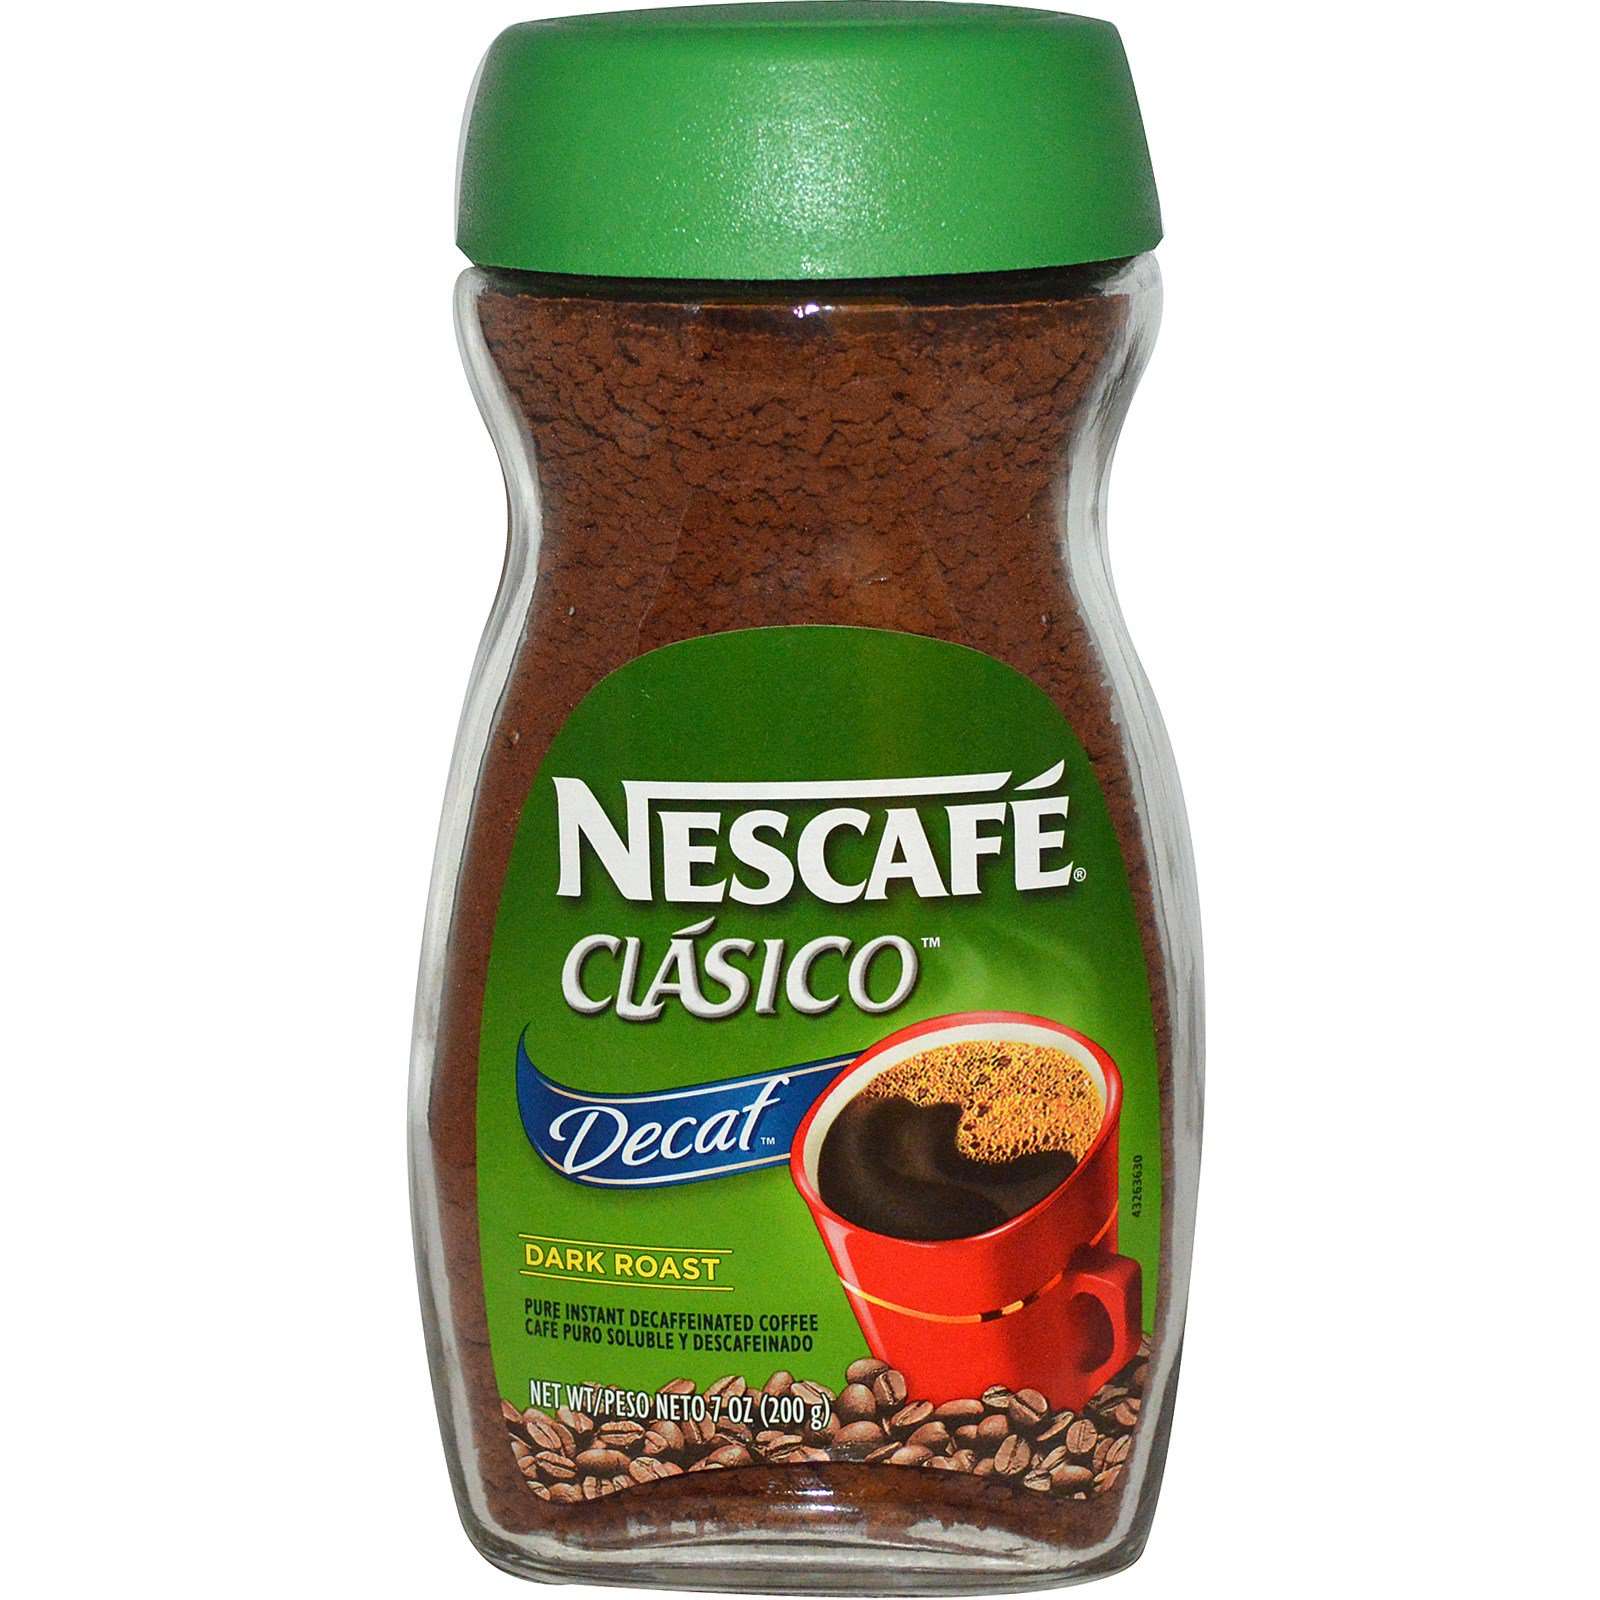 Nescafé, Clasico, Pure Instant Decaffeinated Coffee, Decaf, Dark Roast ...